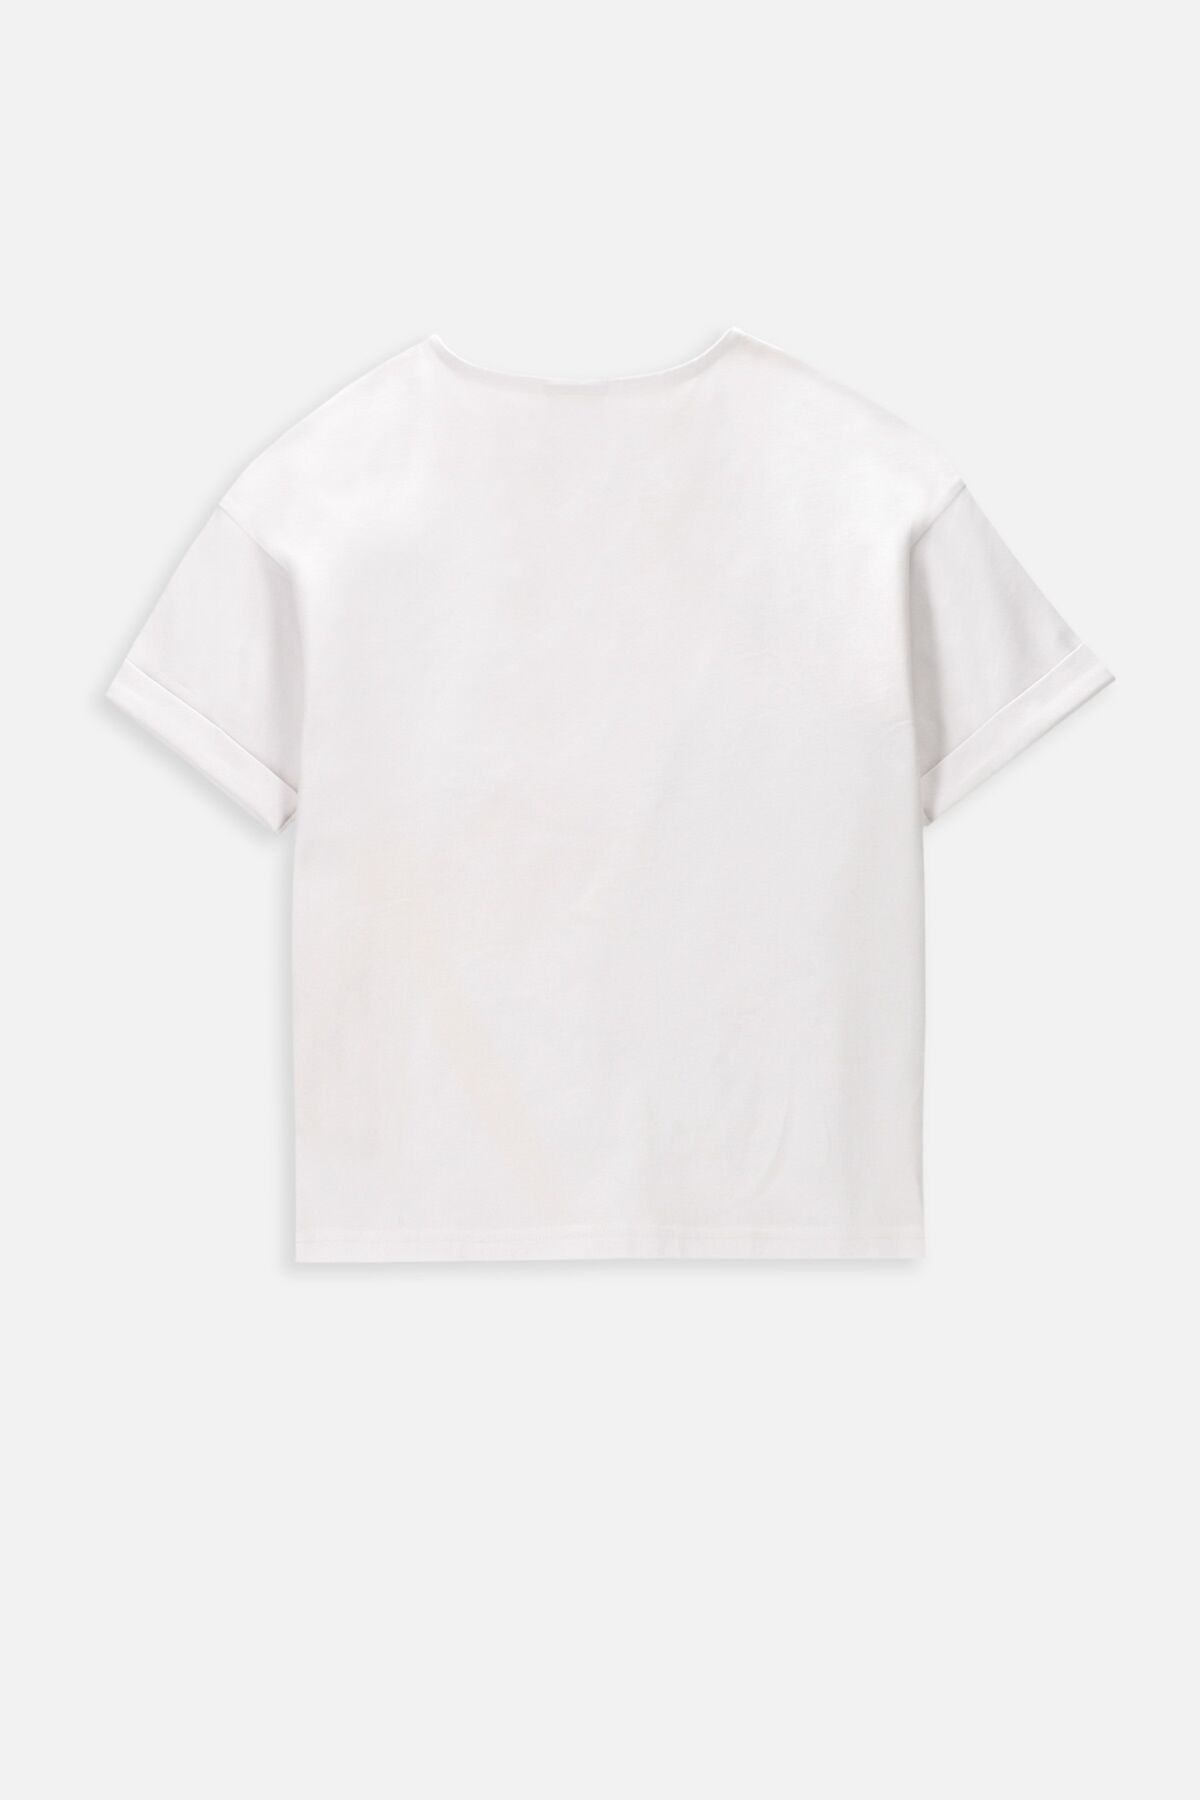 T-shirt z krótkim rękawem biały z nadrukiem owadów 2236387